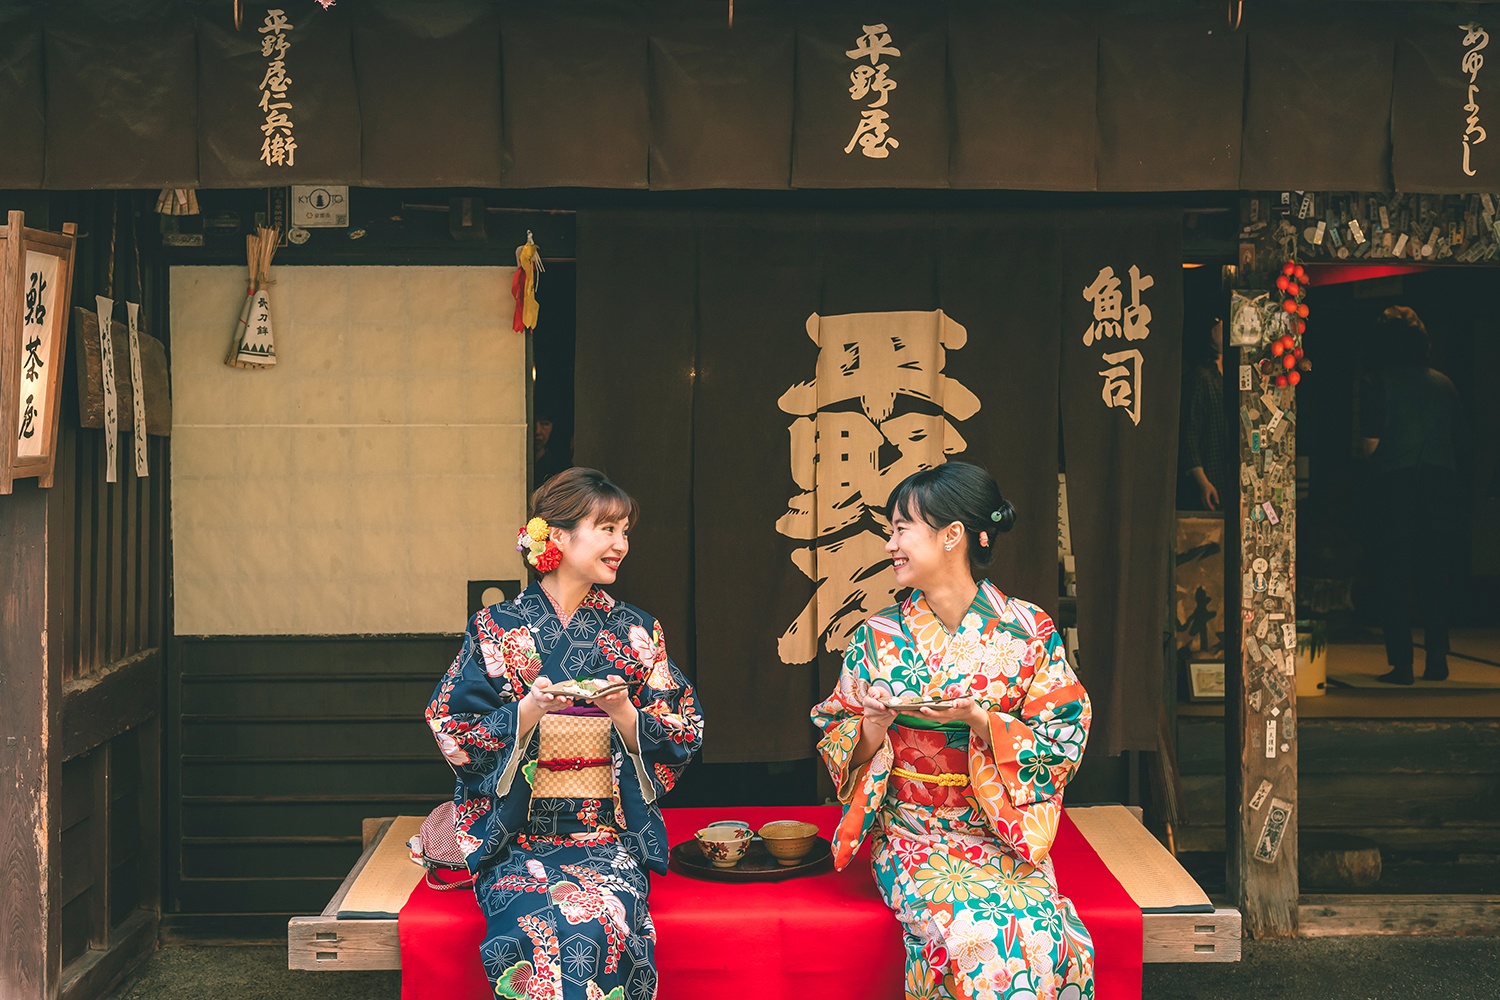 لباس های سنتی از صنایع دستی ژاپن